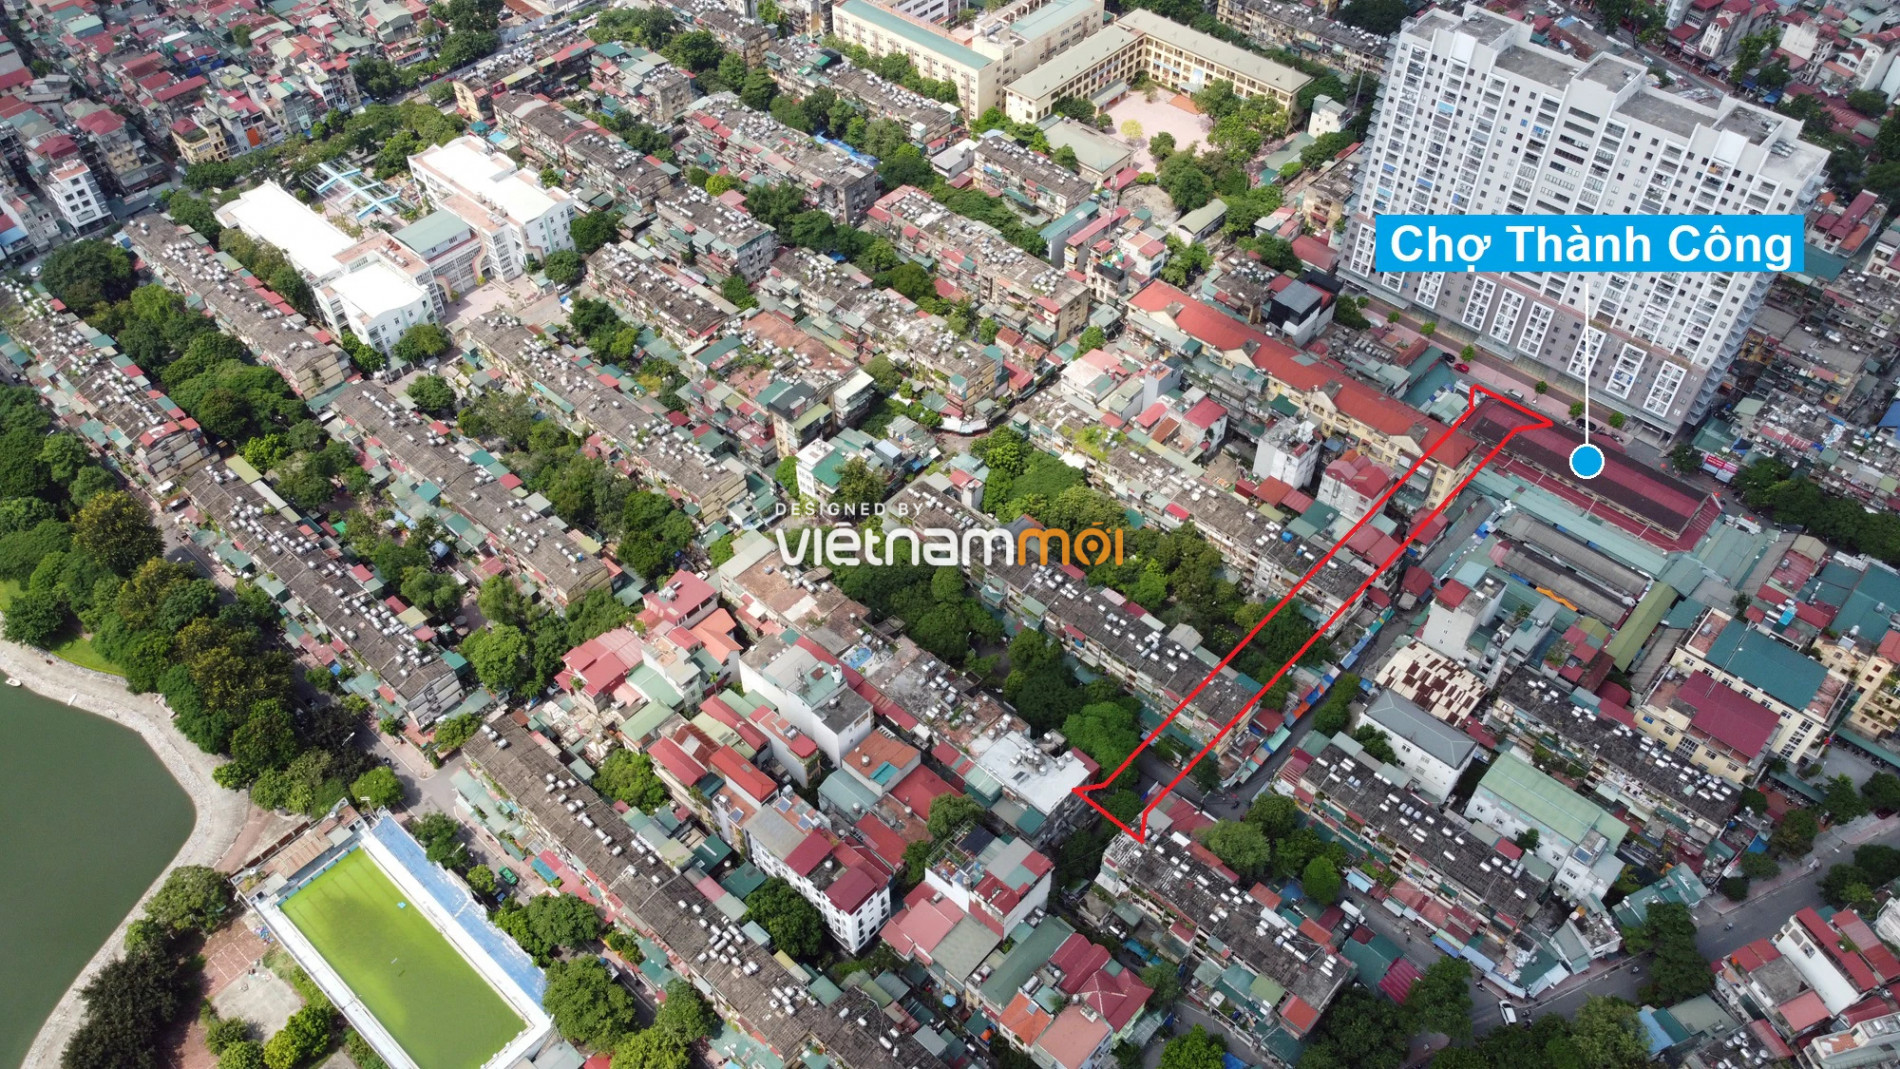 Những khu đất sắp thu hồi để mở đường ở phường Thành Công, Ba Đình, Hà Nội (phần 2) - Ảnh 17.